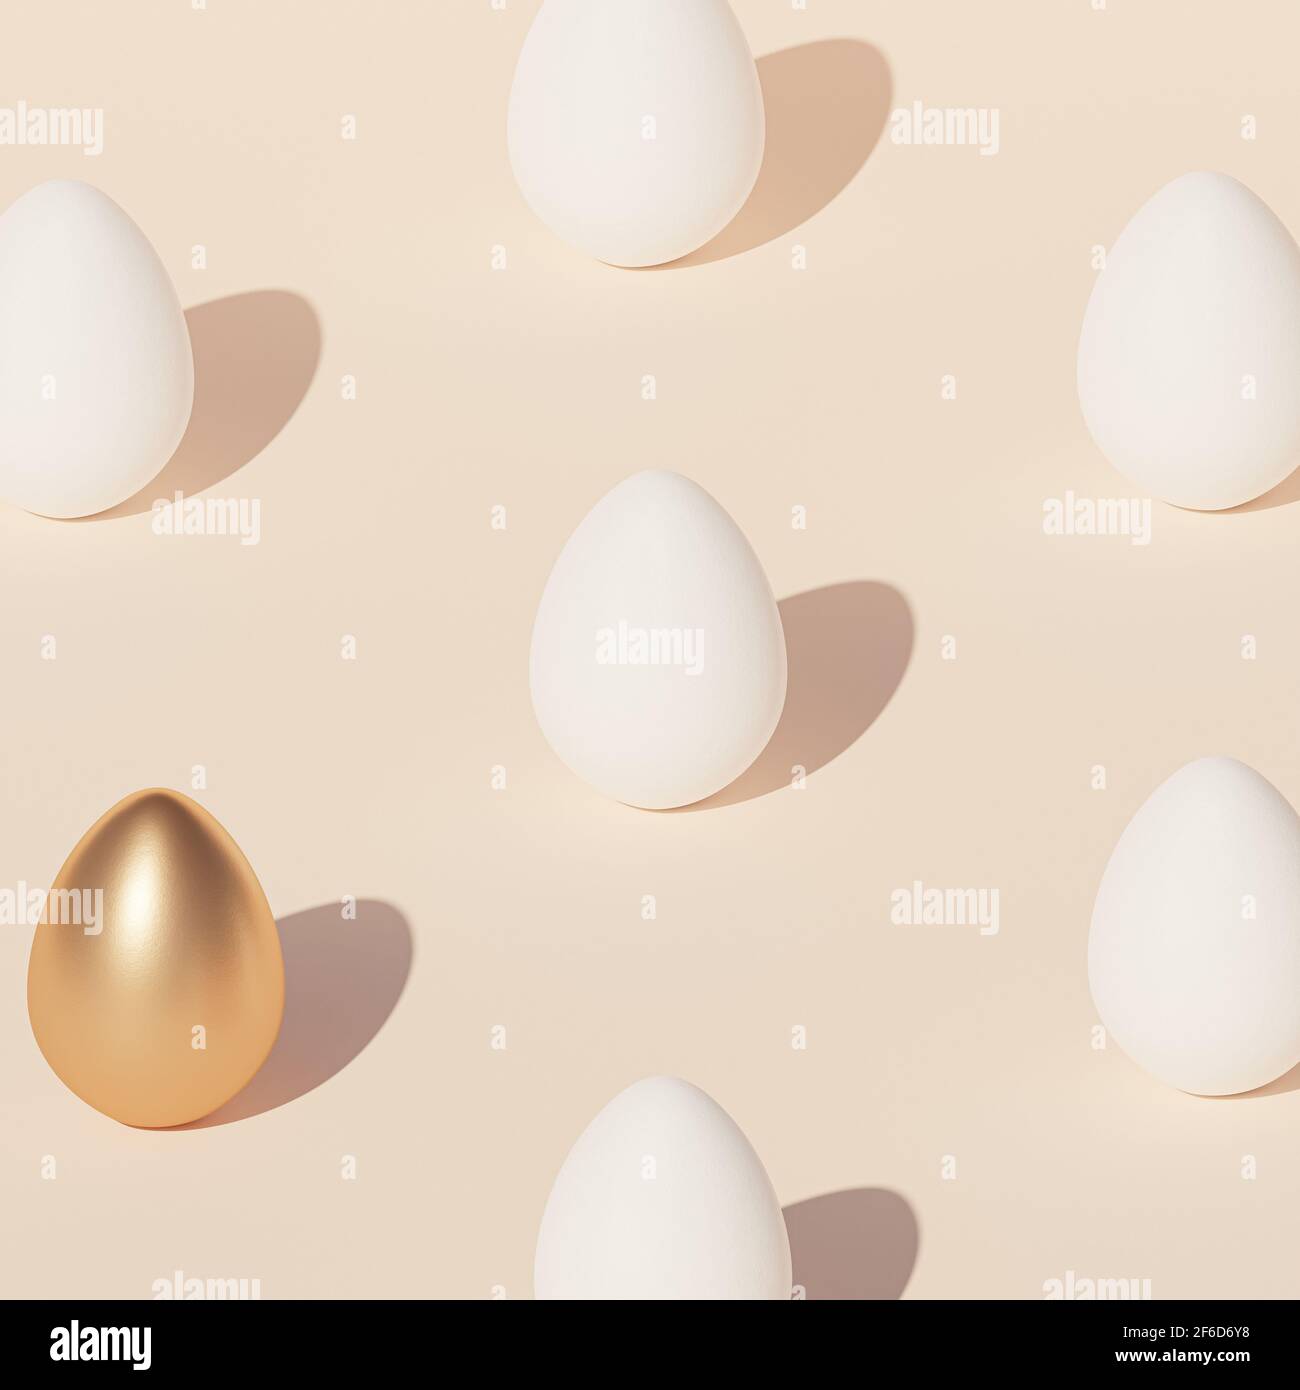 Motif d'oeufs de Pâques blancs et un oeuf décoré d'or, fond beige, carte de vacances du printemps avril, rendu d'illustration 3d isométrique Banque D'Images